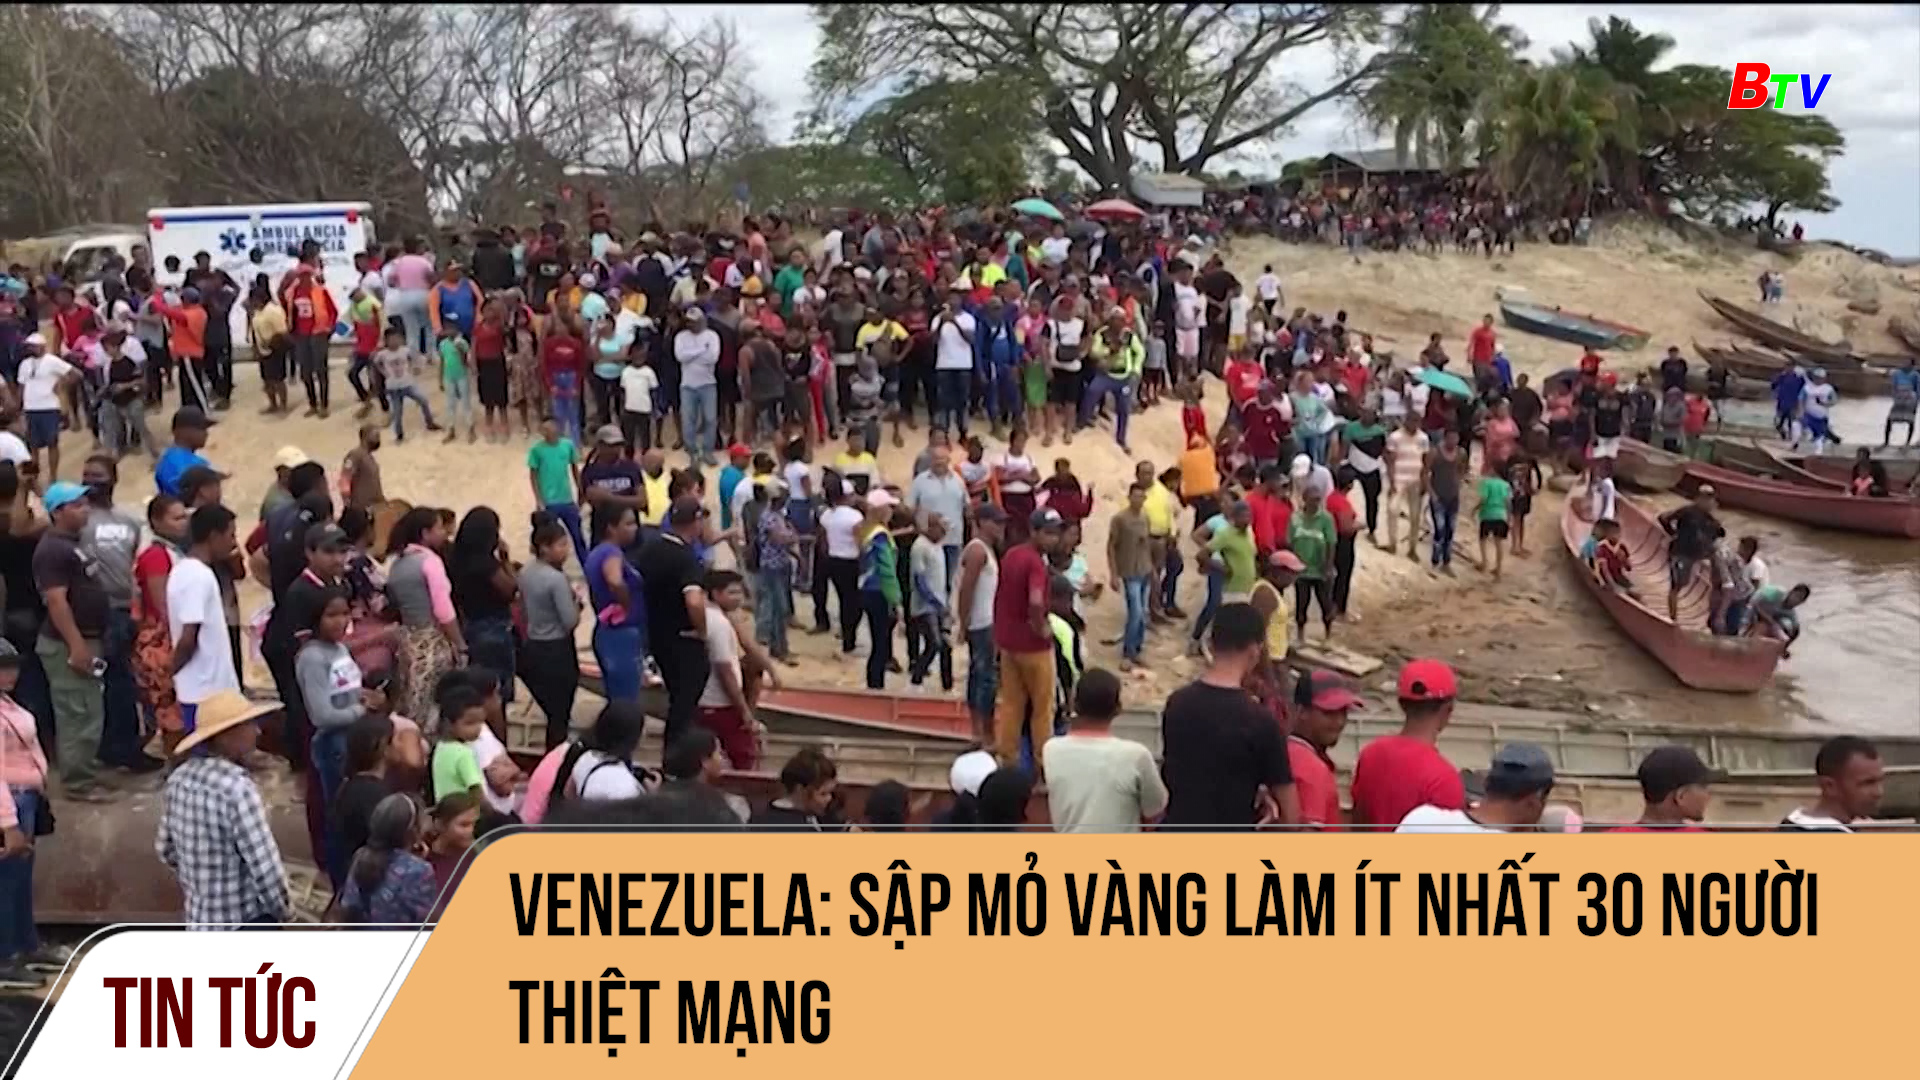 Venezuela: Sập mỏ vàng làm ít nhất 30 người thiệt mạng